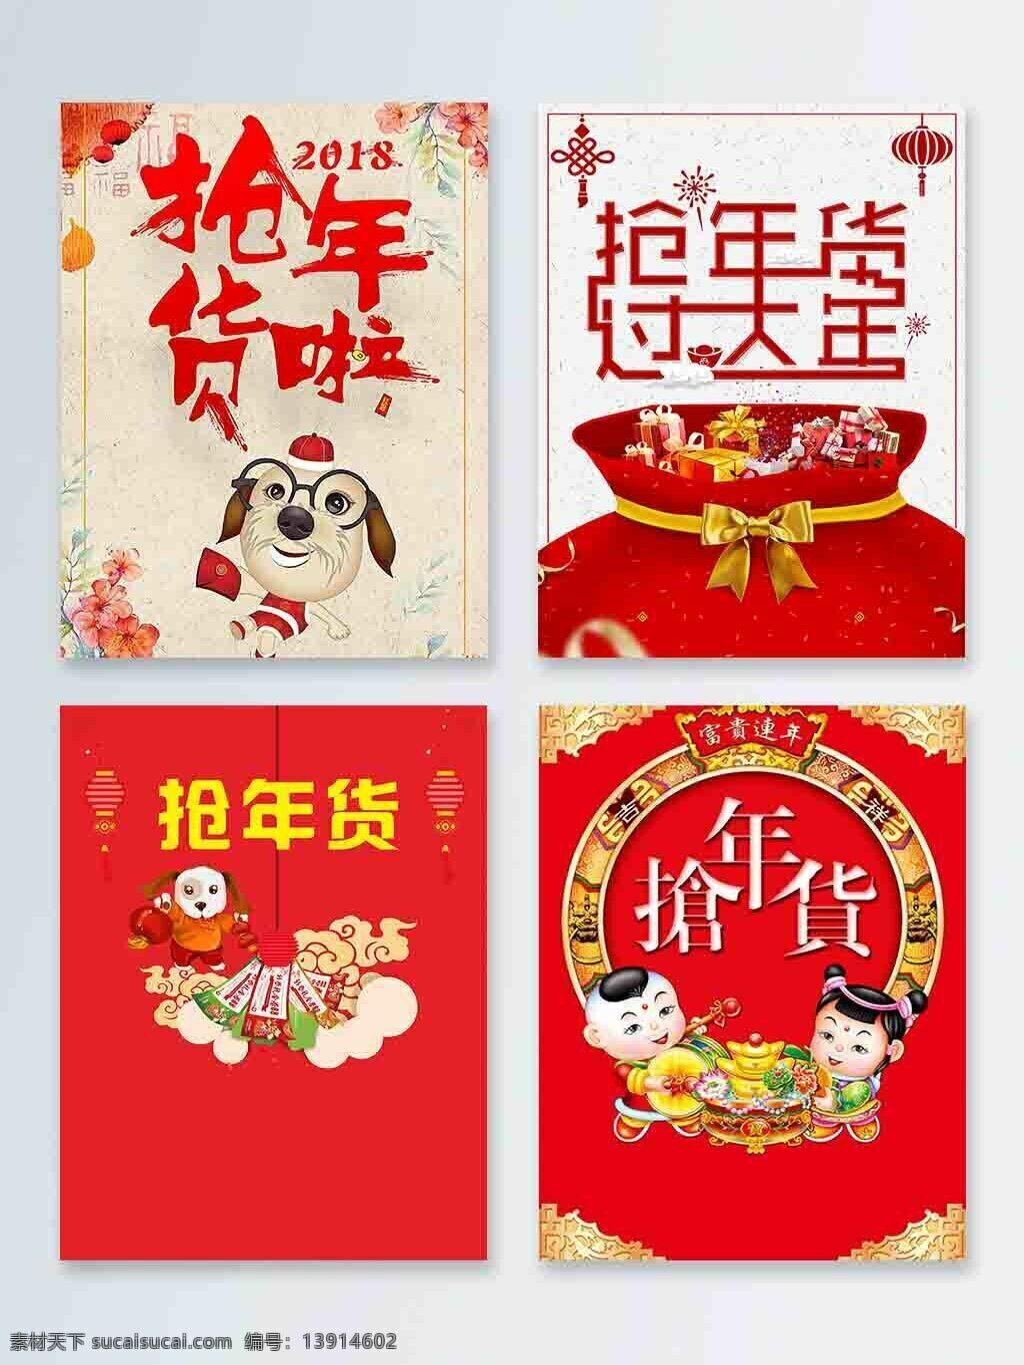 2018 抢 年货 中国 风 节日 促销 灯笼 海报 红色 抢年货 中国风